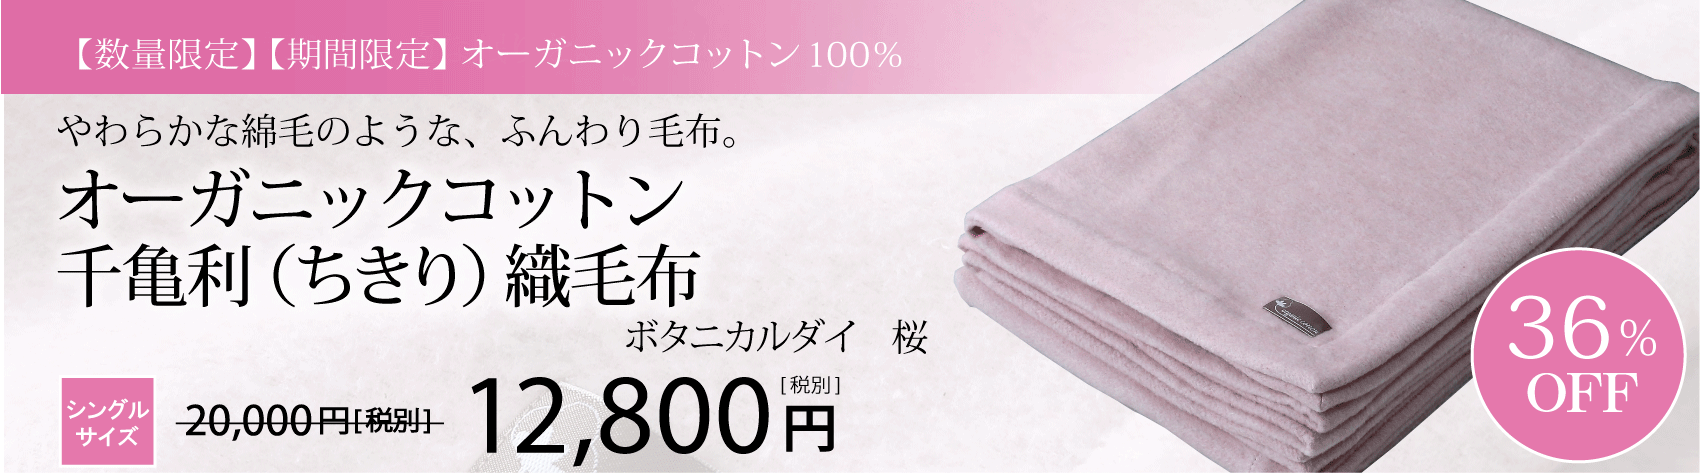 千亀利織毛布ボタニカル桜